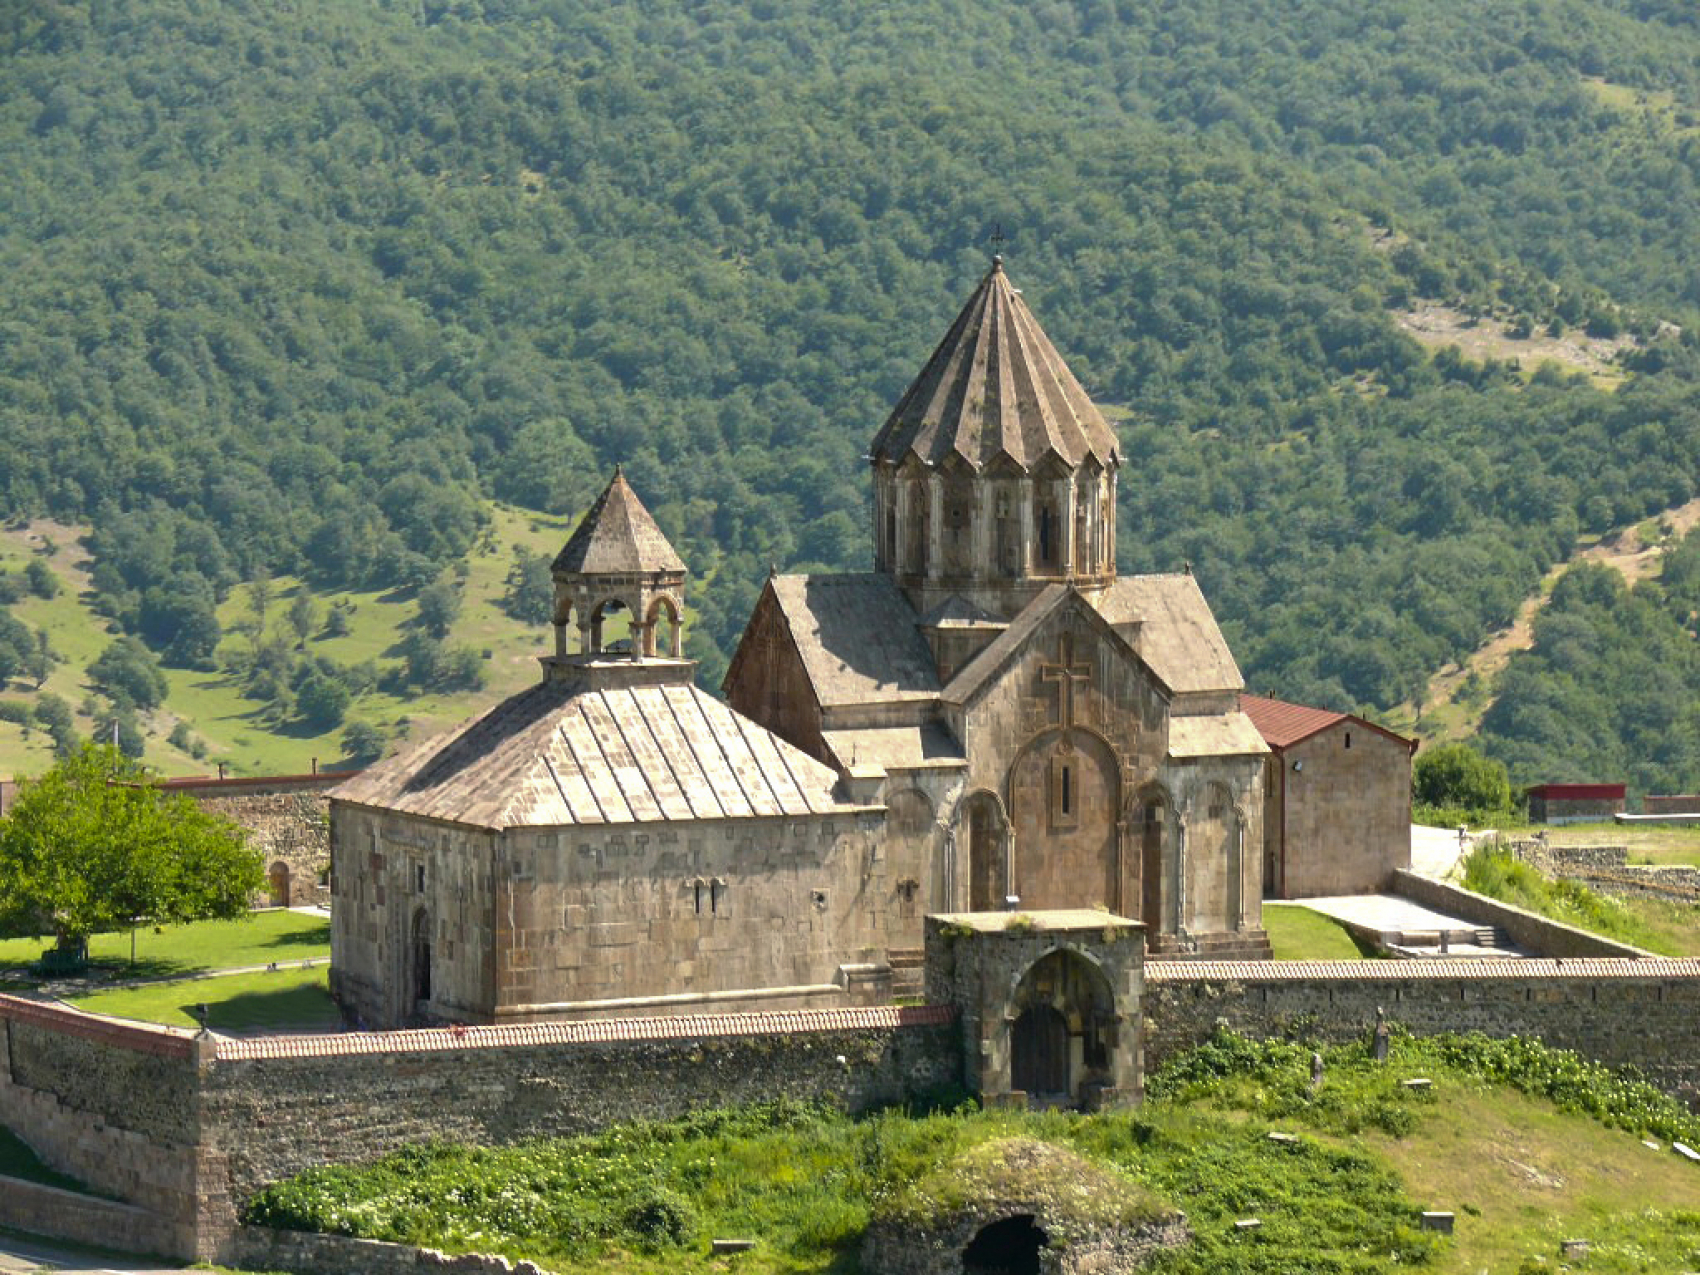 Le monastère arménien de Gandsassar, situé sur les berges de la rivière Khatchen, dans le Haut-Karabakh, est déserté depuis l’attaque de l’Azerbaïdjan et l’exode des Arméniens de la région, le 19 septembre 2023. © Mardanyan Aleksandr/CC BY-SA 4.0